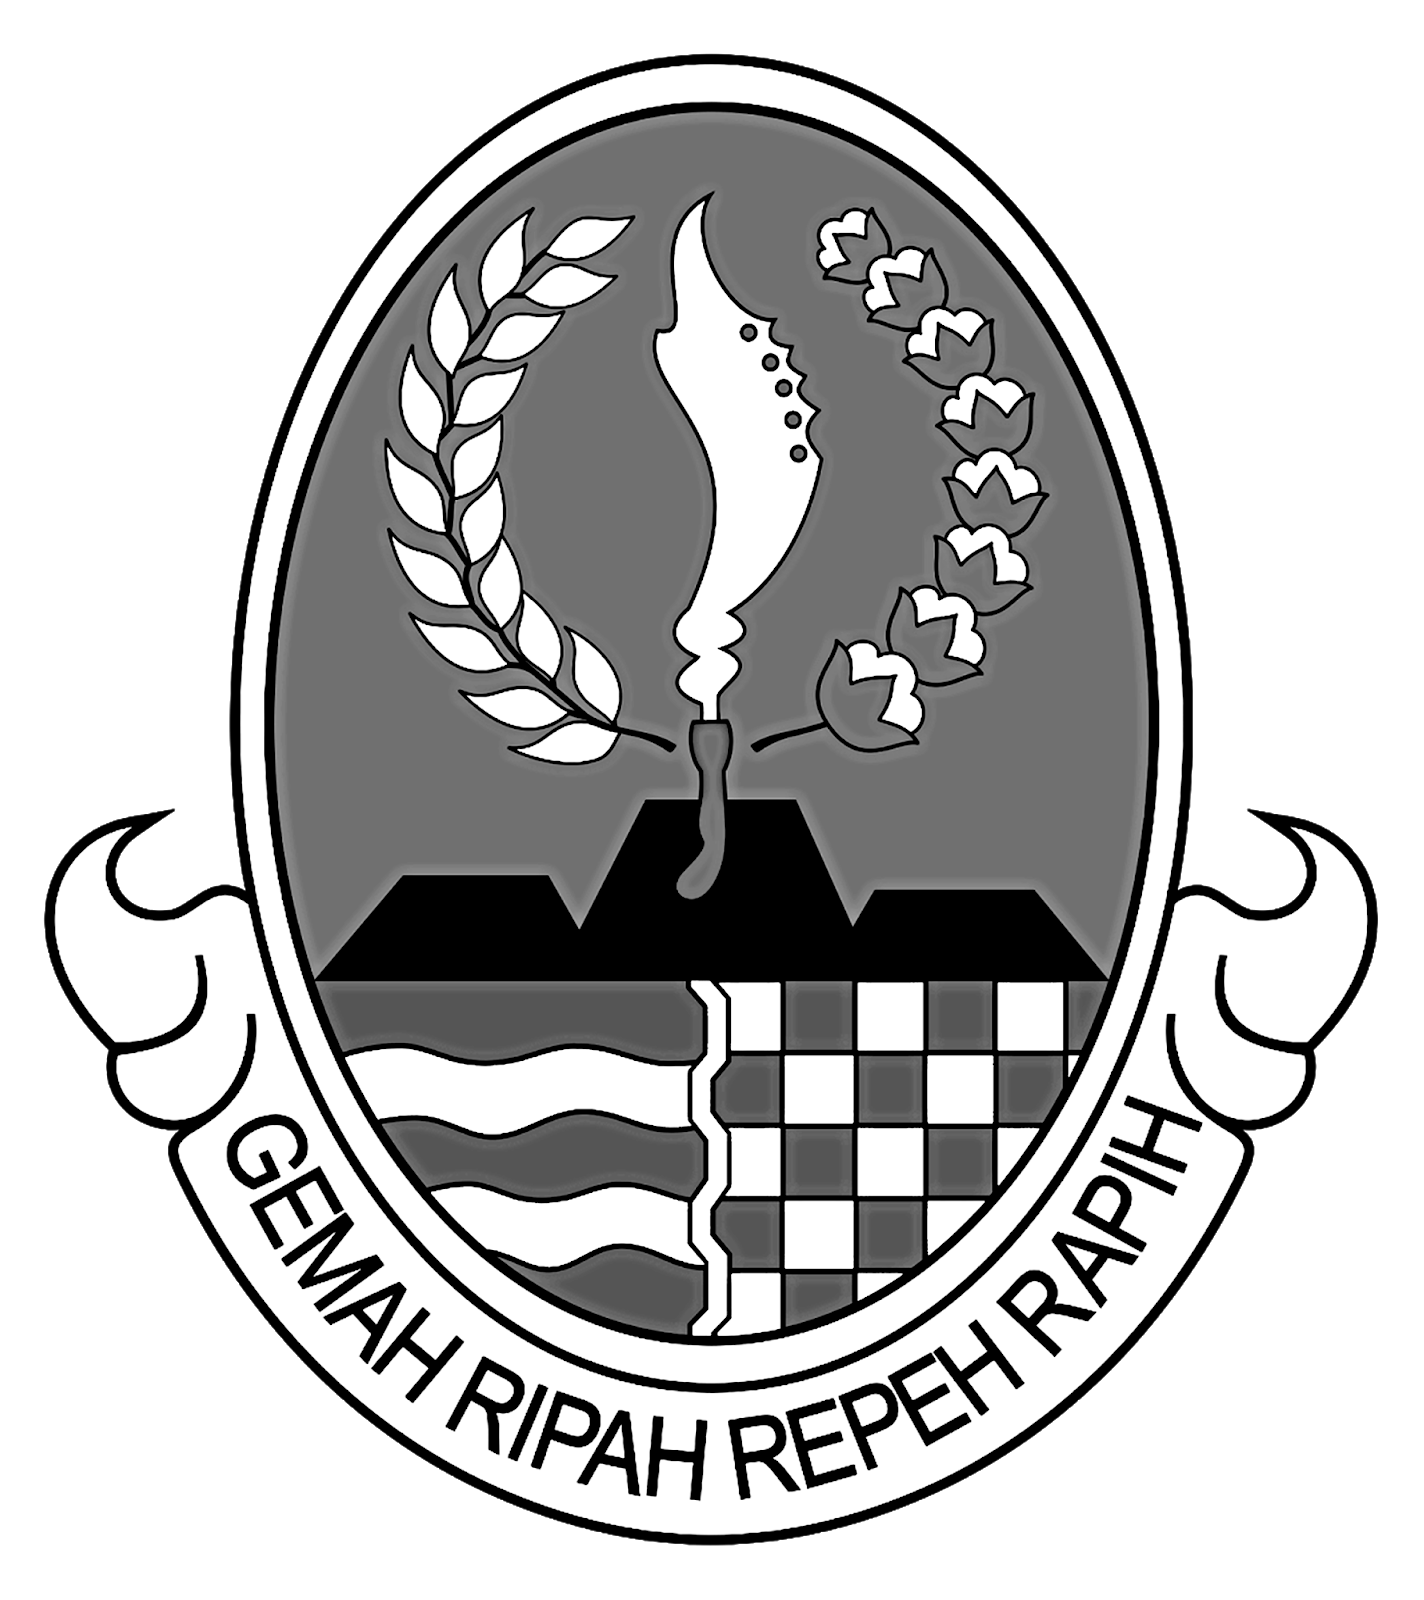 Logo Kabupaten Bandung